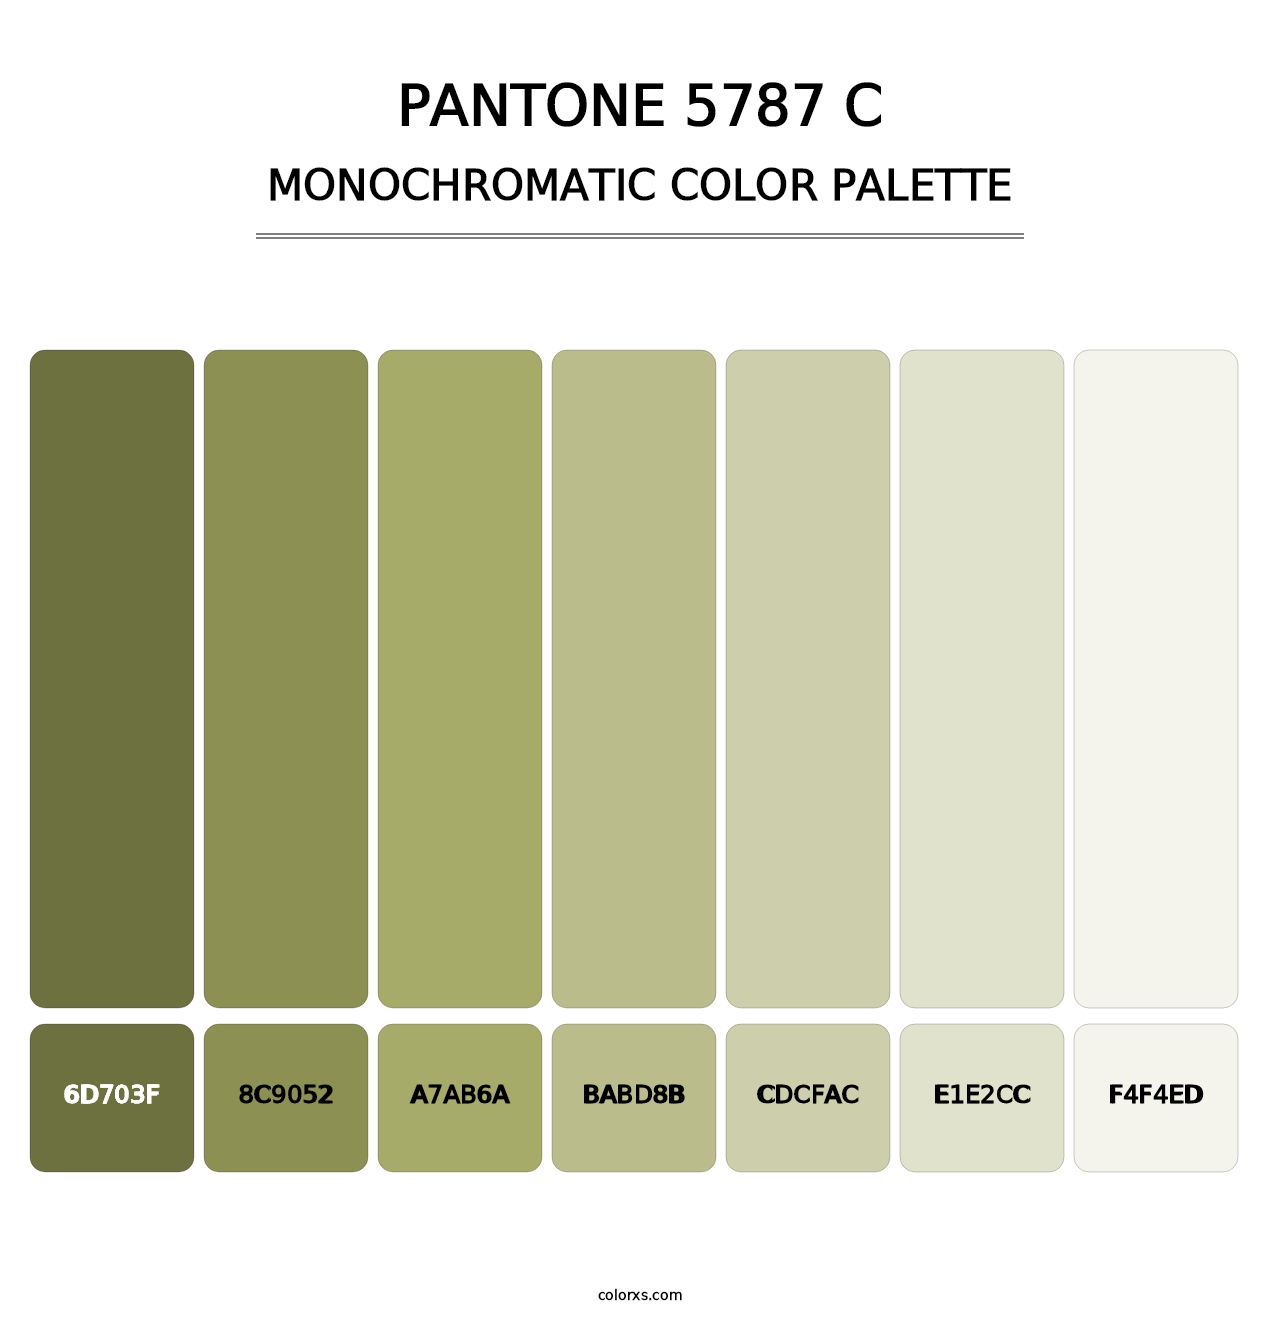 PANTONE 5787 C - Monochromatic Color Palette